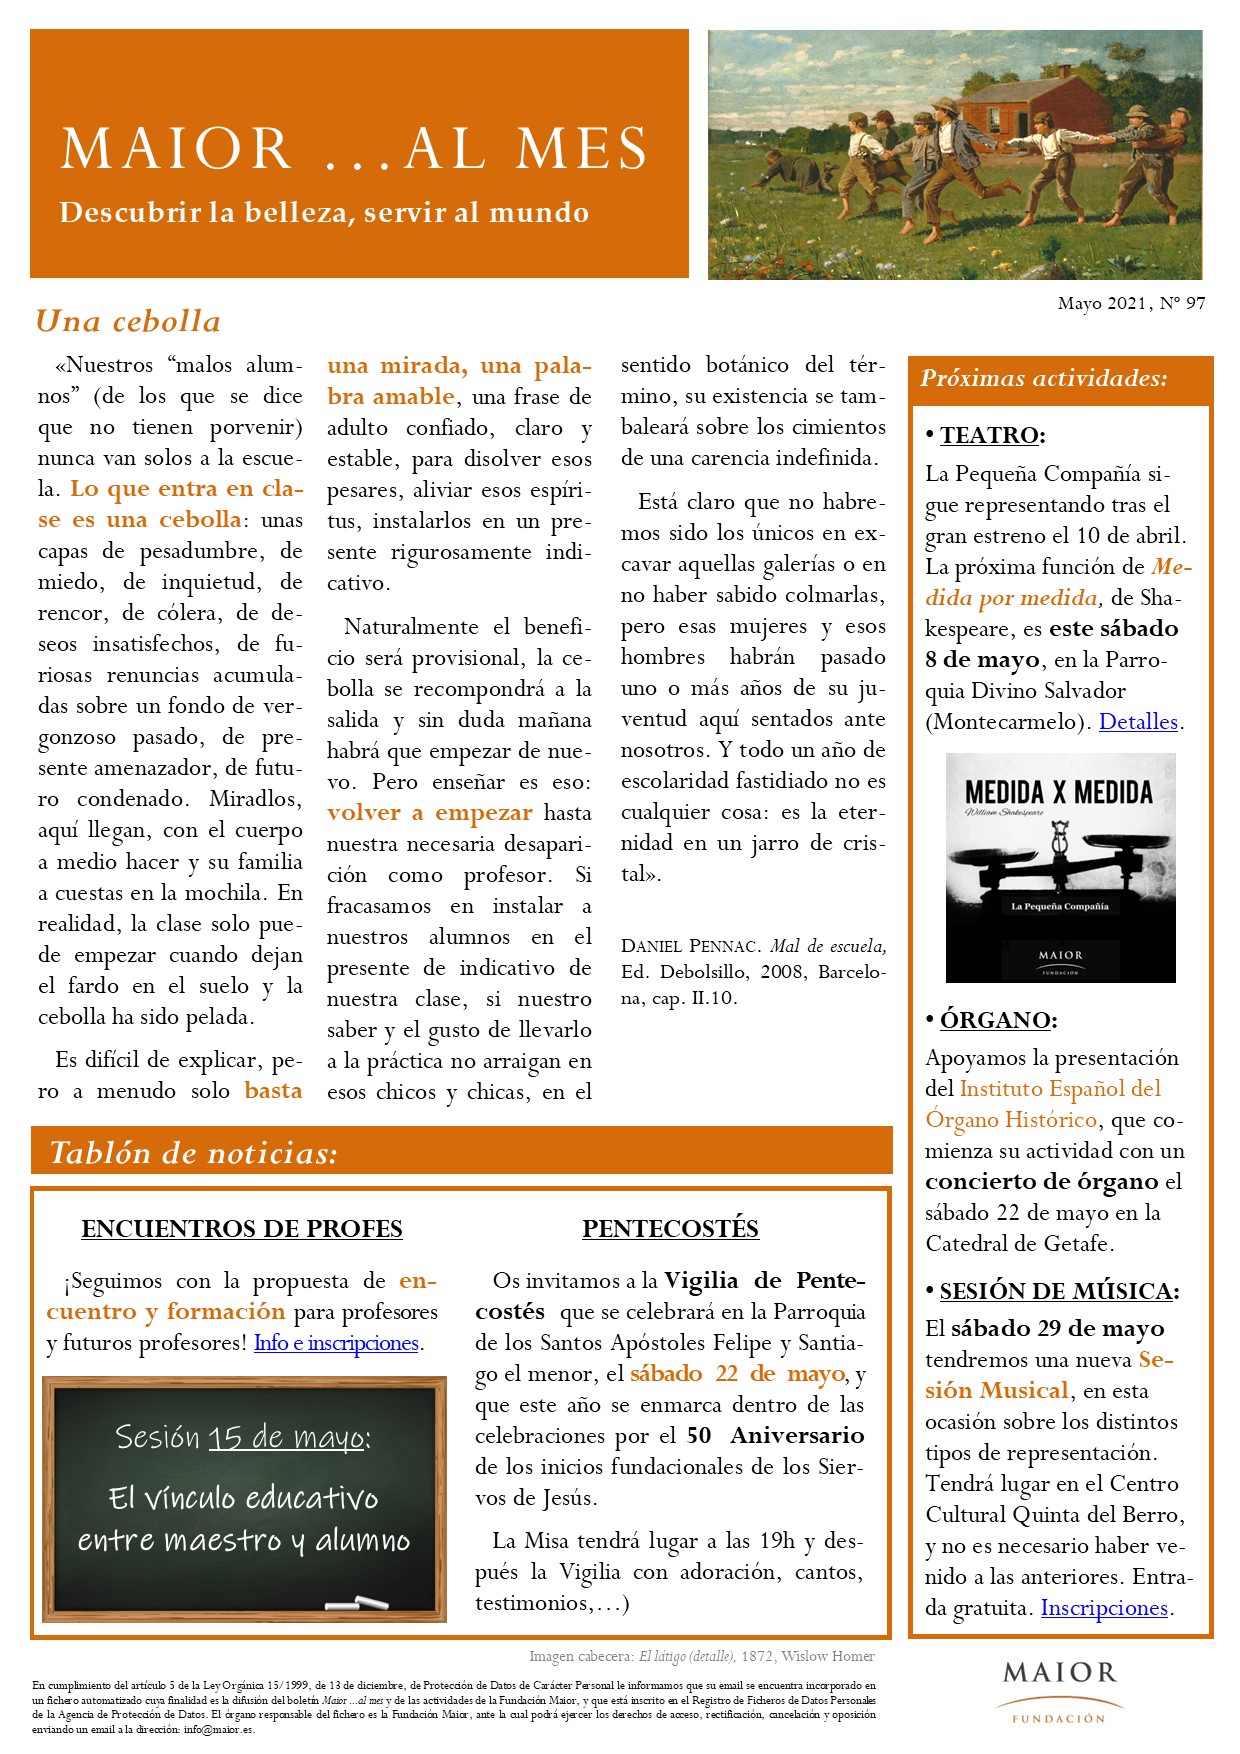 Boletín mensual de noticias y actividades de la Fundación Maior. Edición de mayo 2021